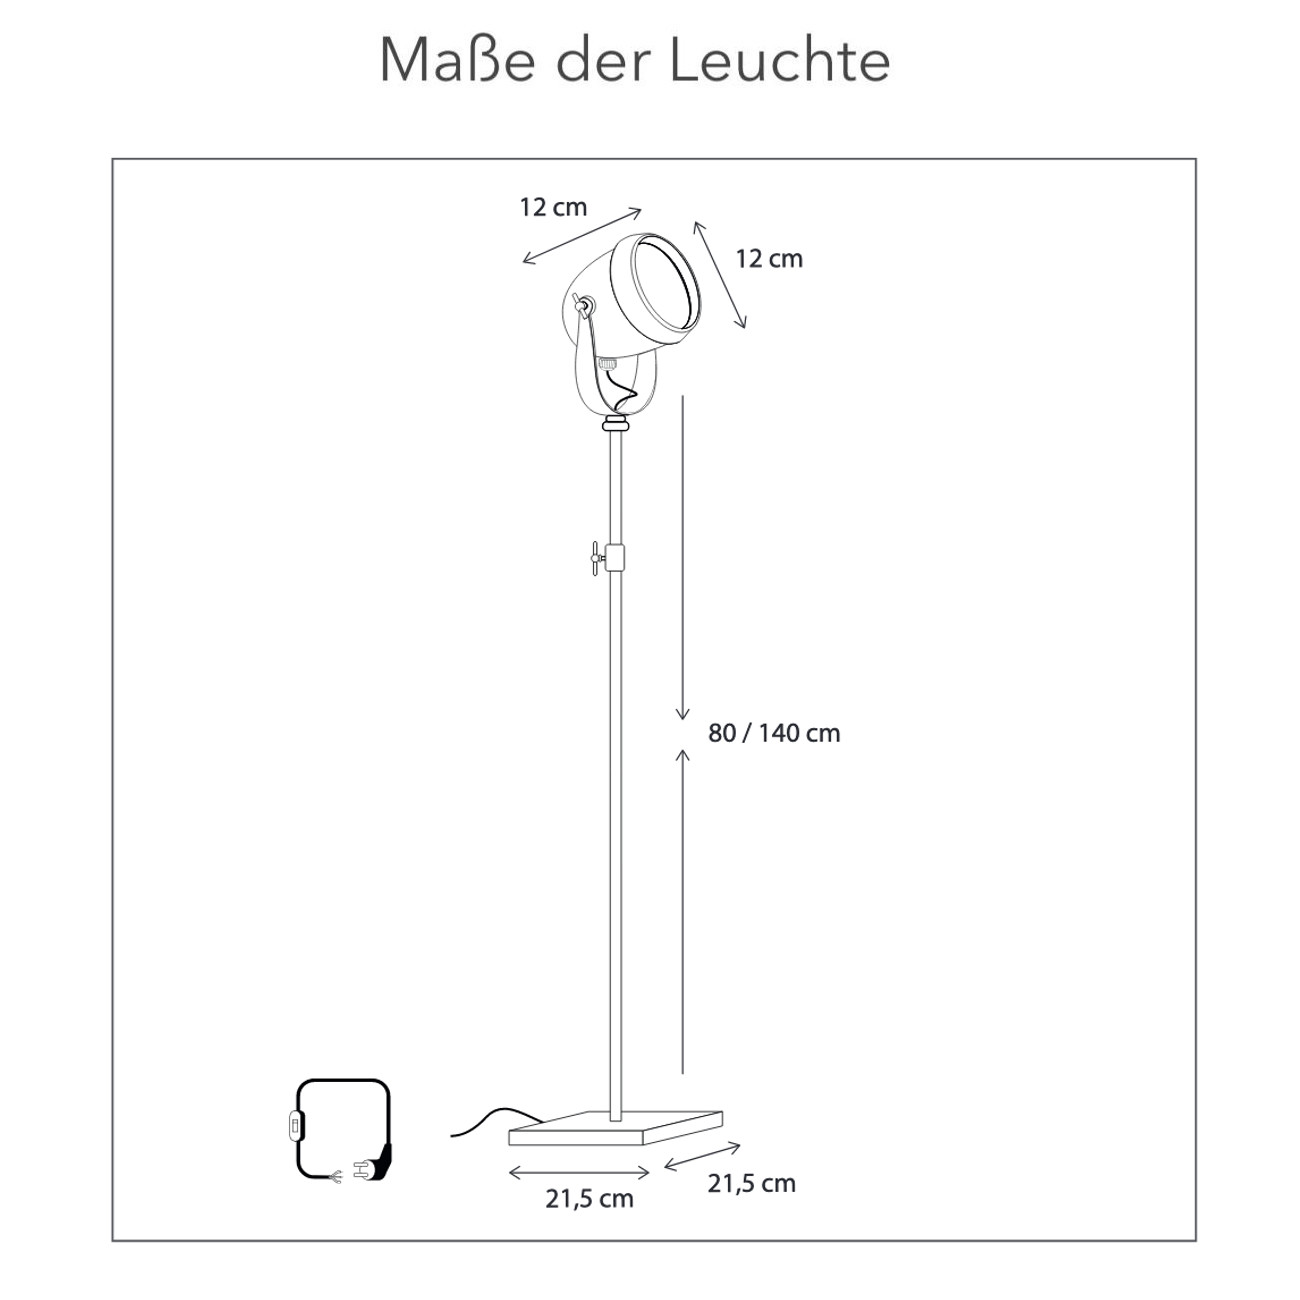 Stativstrahler MACRO-OH Stehleuchte: Der Strahler sitzt auf einem ausziehbaren Stativ mit quadratischem Sockel